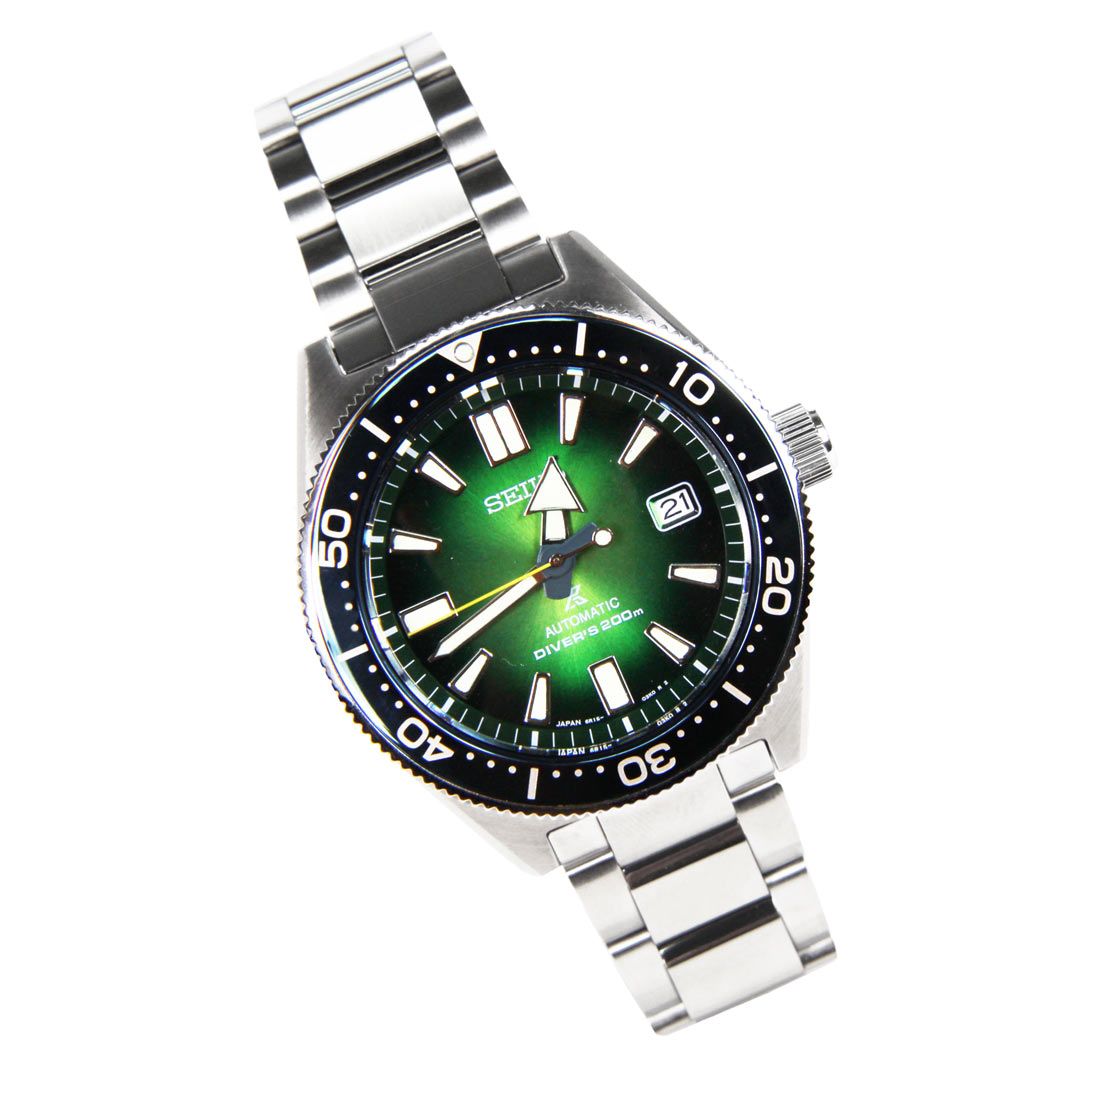 Seiko Prospex Automatic Green Dial JDM Watch SBDC077 -Seiko